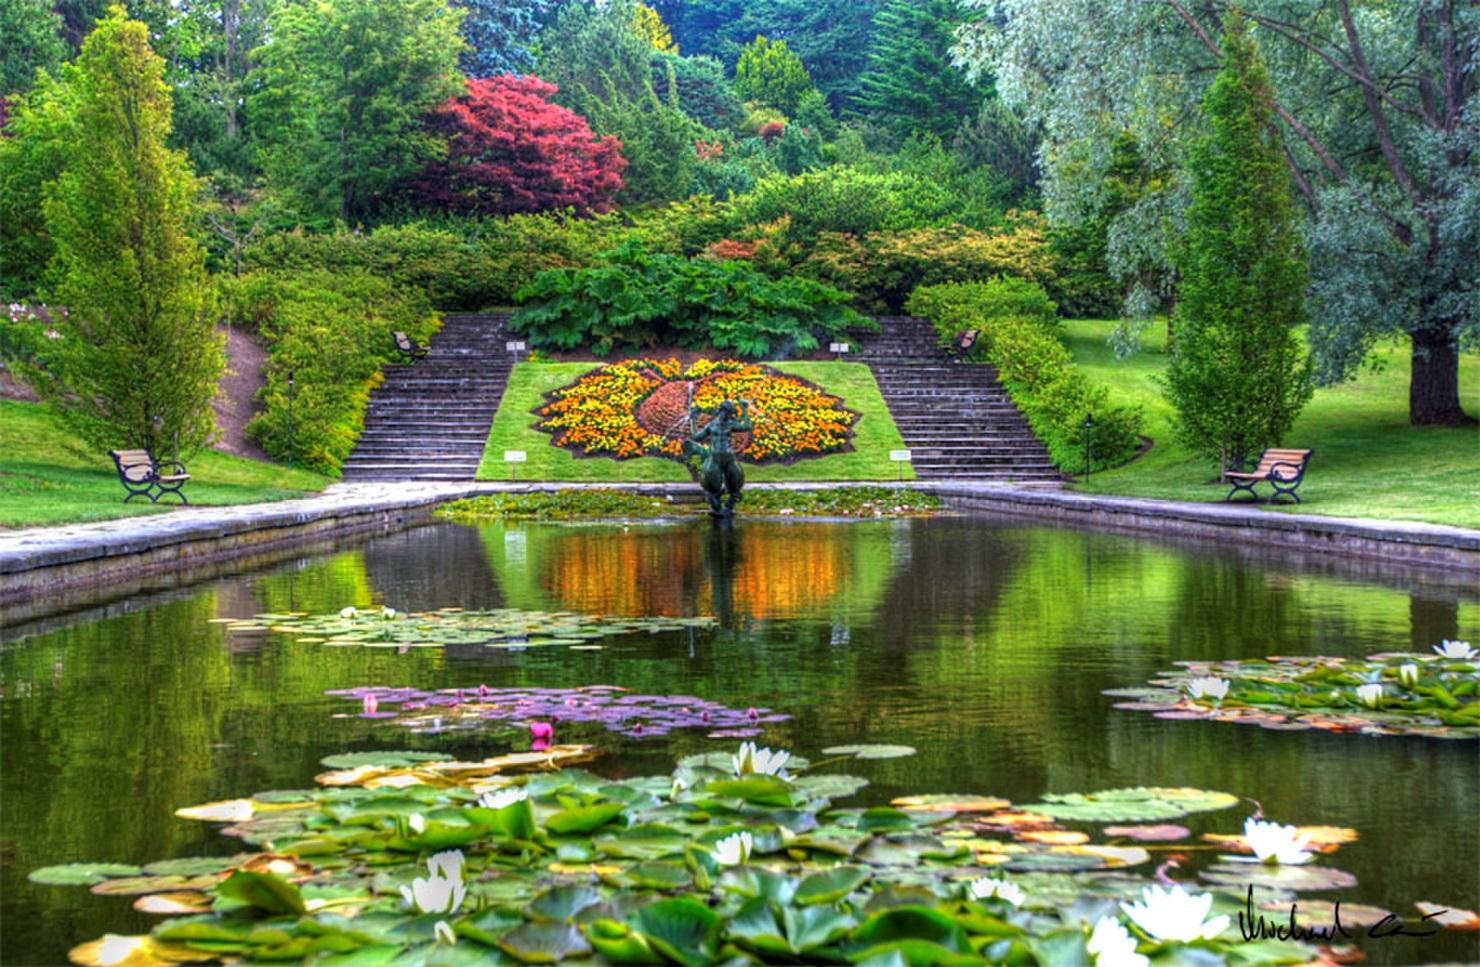 Gothenburg Botanical Garden: Get Amazed by Plant Species From Around the  World (Sweden)